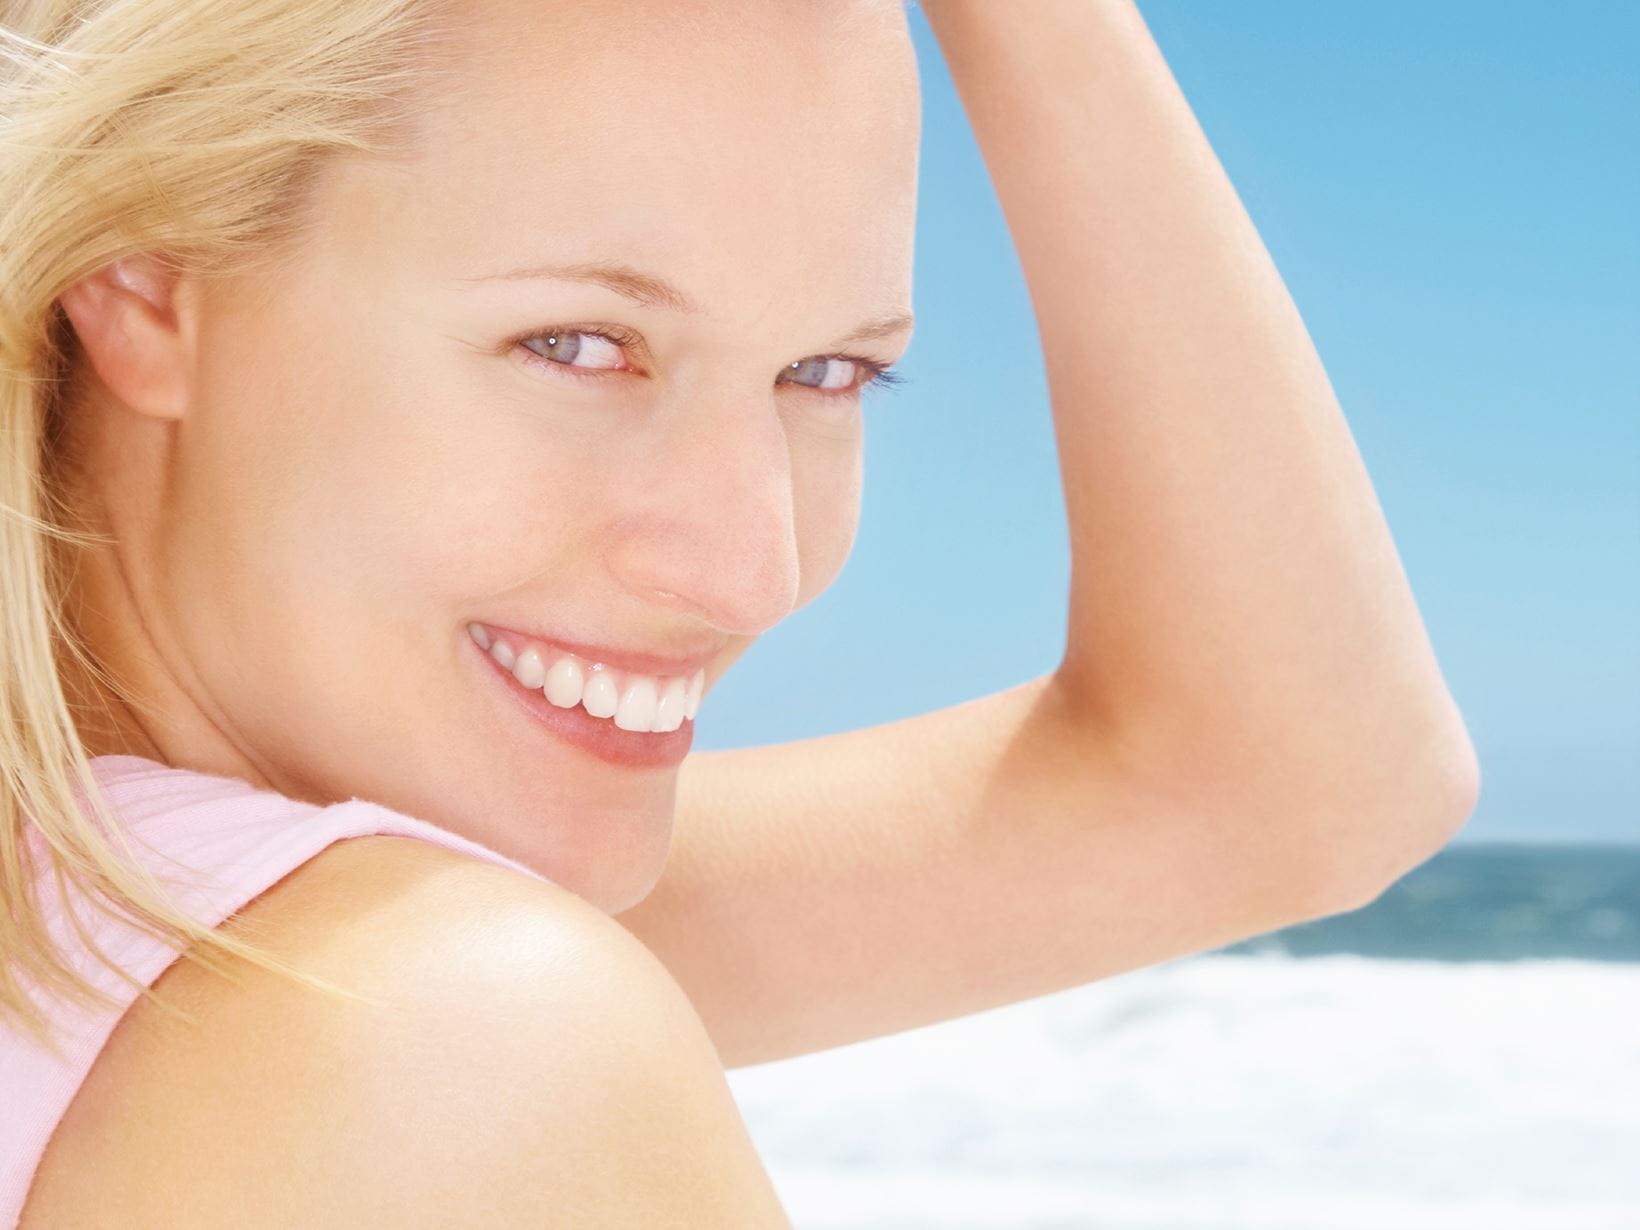 Когато е продължително изложена на UVA лъчите без защита, деликатната кожа на лицето може да загуби еластичността си. В допълнение към осигуряване на защита от преждевременно стареене, *NIVEA Sun Protect&Bronze крем за лице за естествен тен SPF50+* ви помага да постигнете естествена визия на целунати от слънцето. 